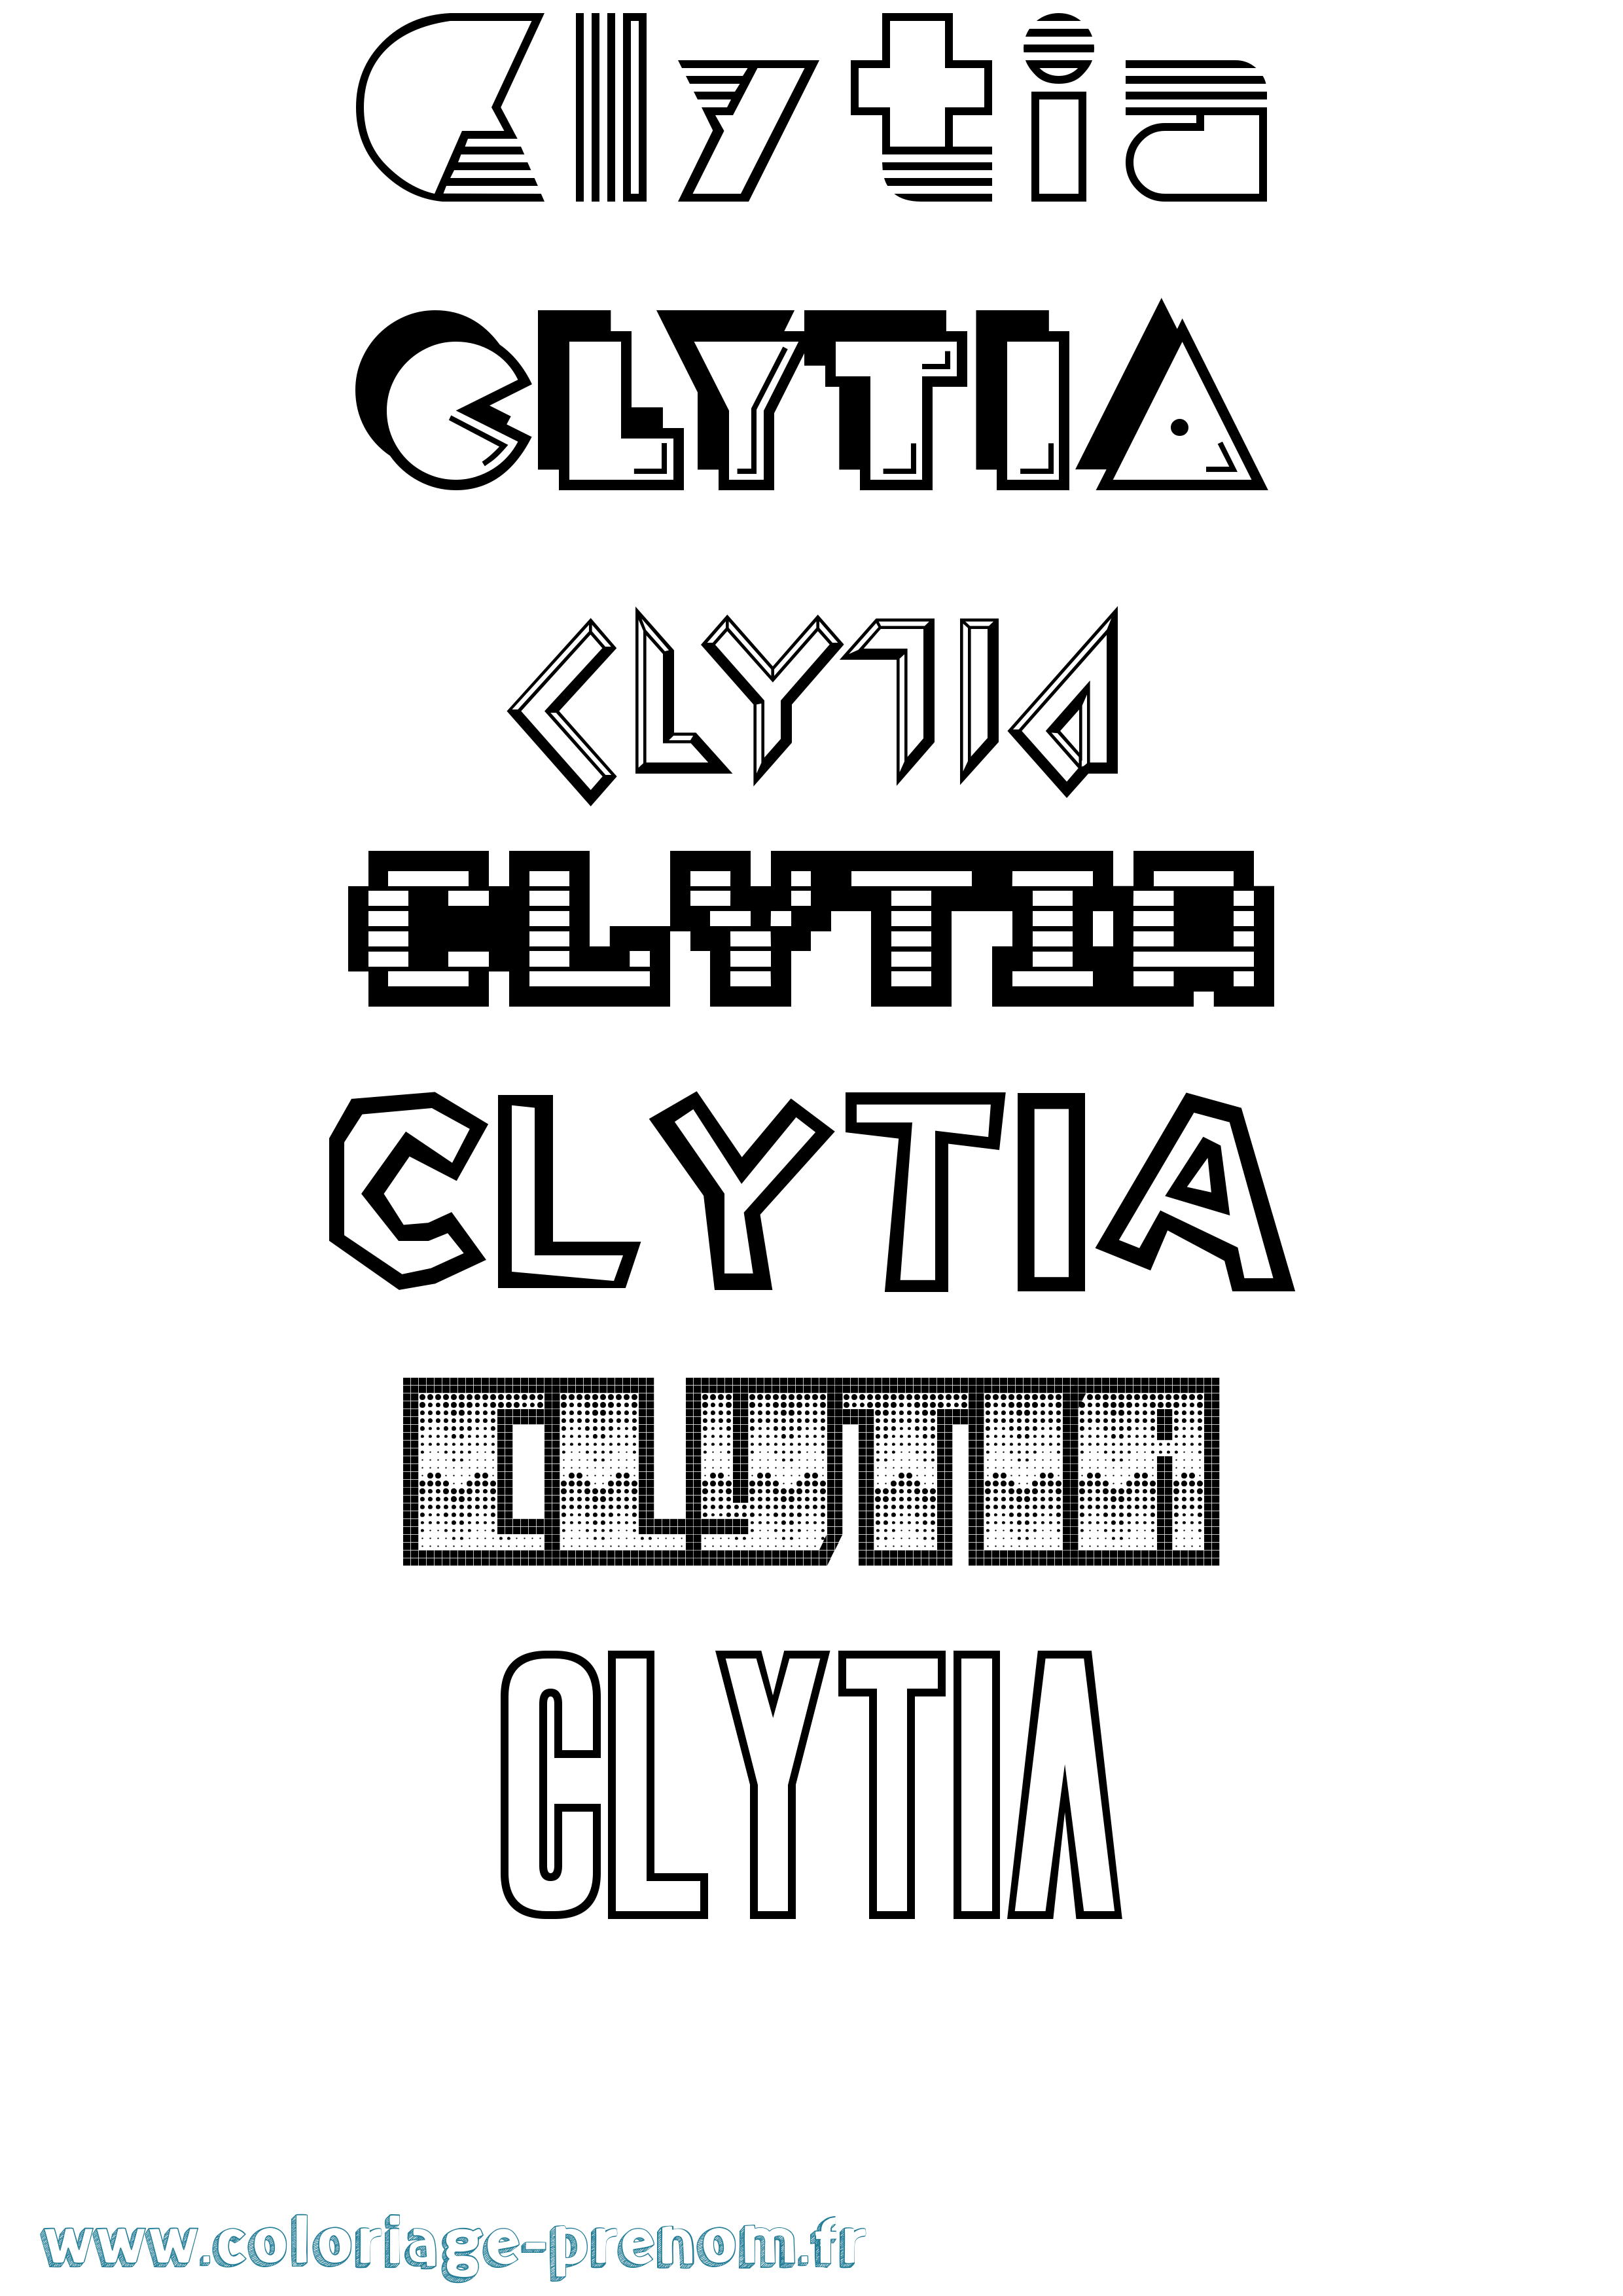 Coloriage prénom Clytia Jeux Vidéos